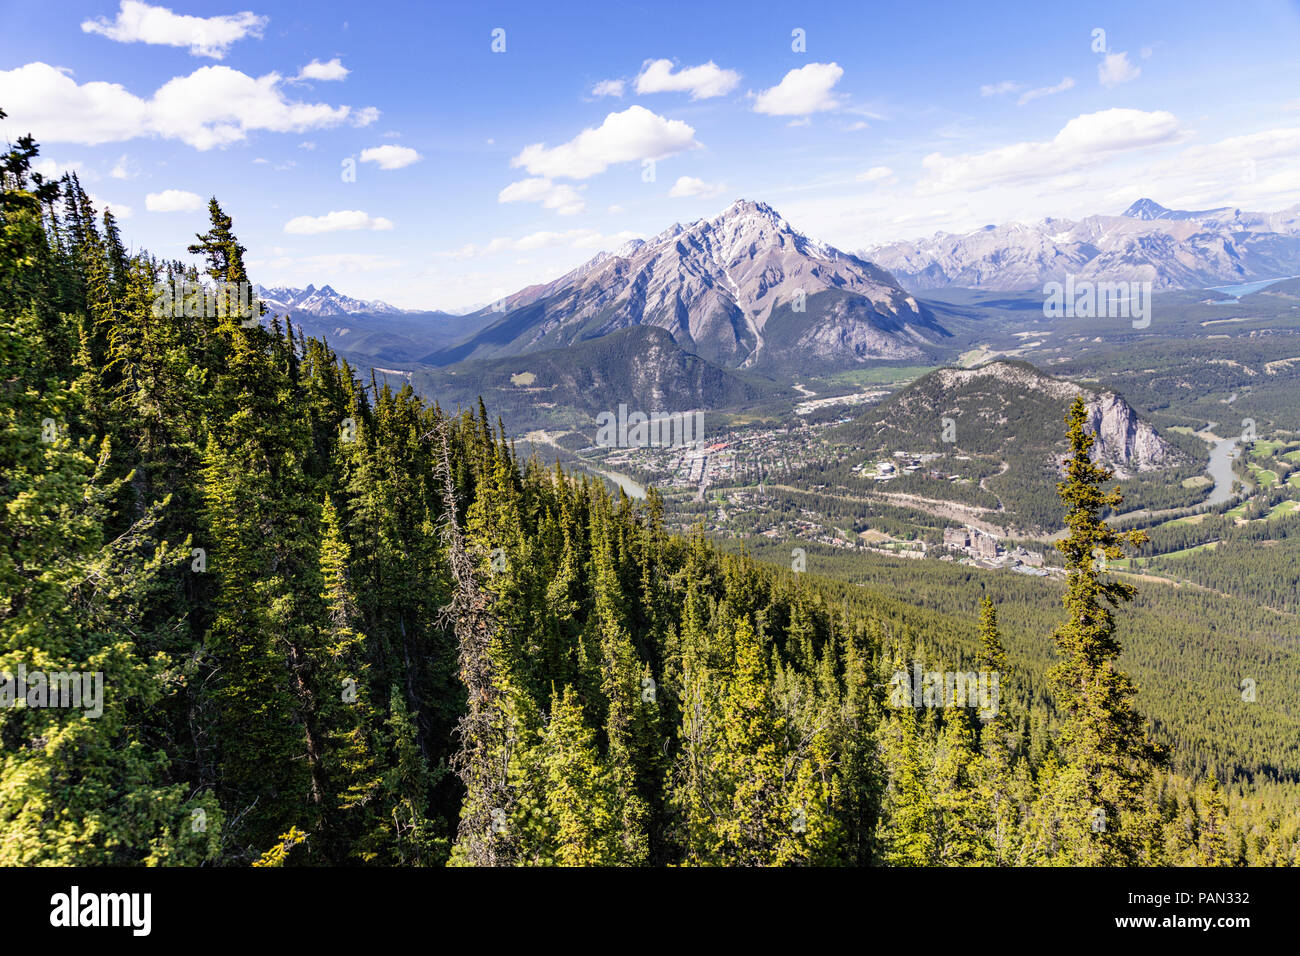 La ciudad de Banff, fotografiado desde la góndola de Banff en las Montañas Rocosas, Banff, Alberta, Canadá Foto de stock